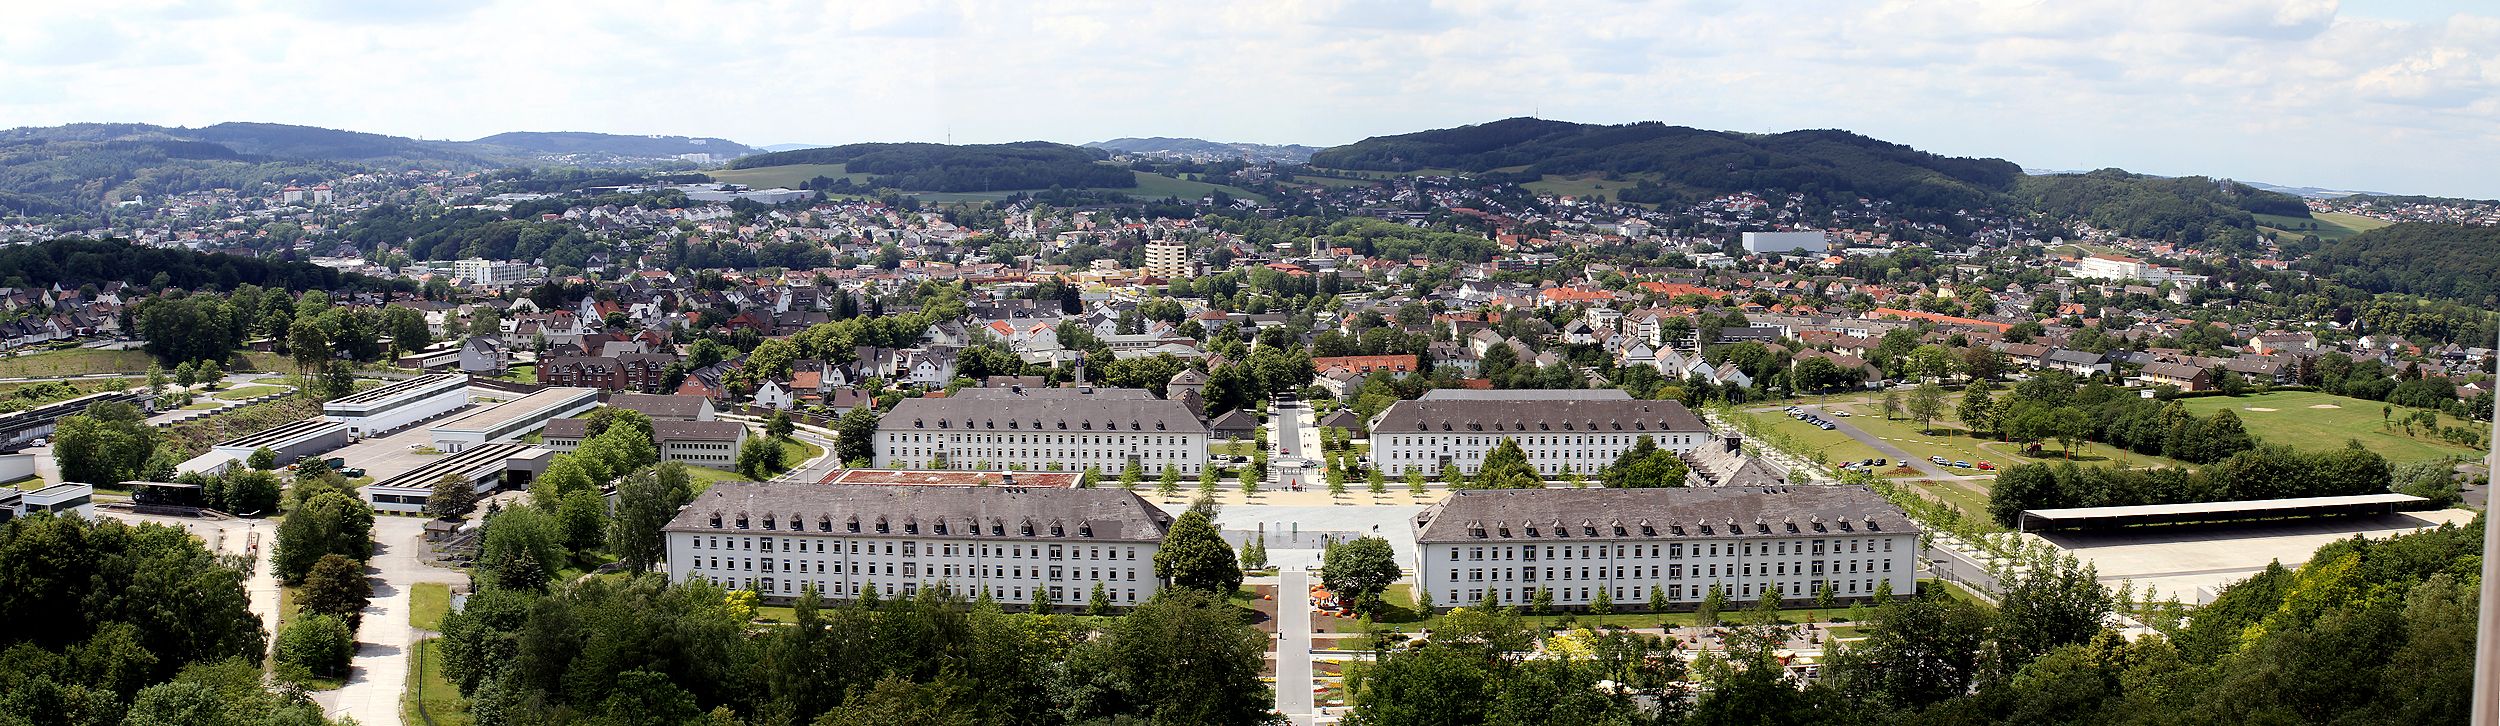 Panoramablick über die Stadt Hemer